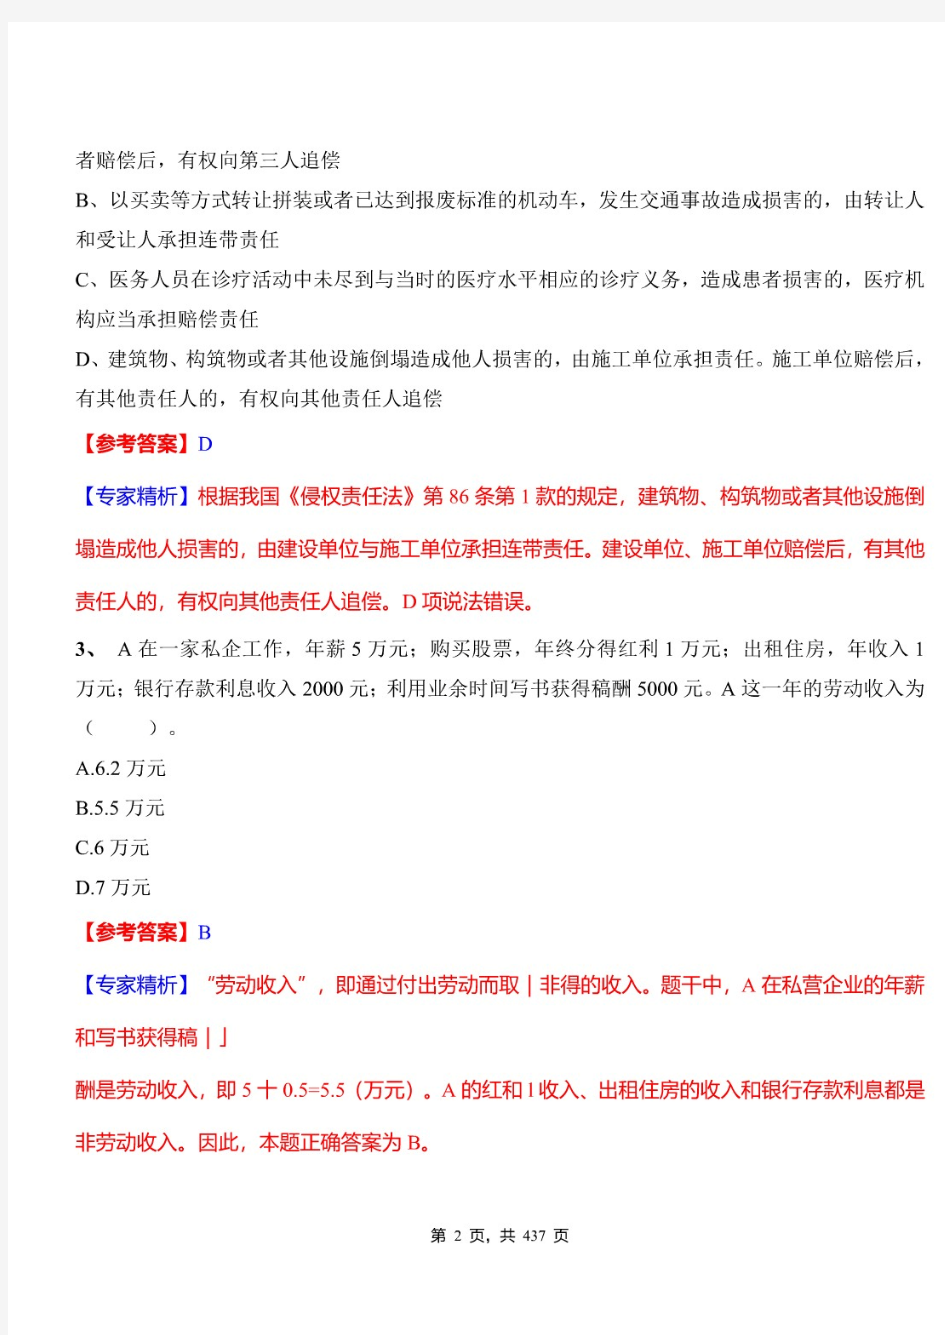 2021年江苏省徐州市事业单位招聘考试《公共基础知识》必做真题及专家精析